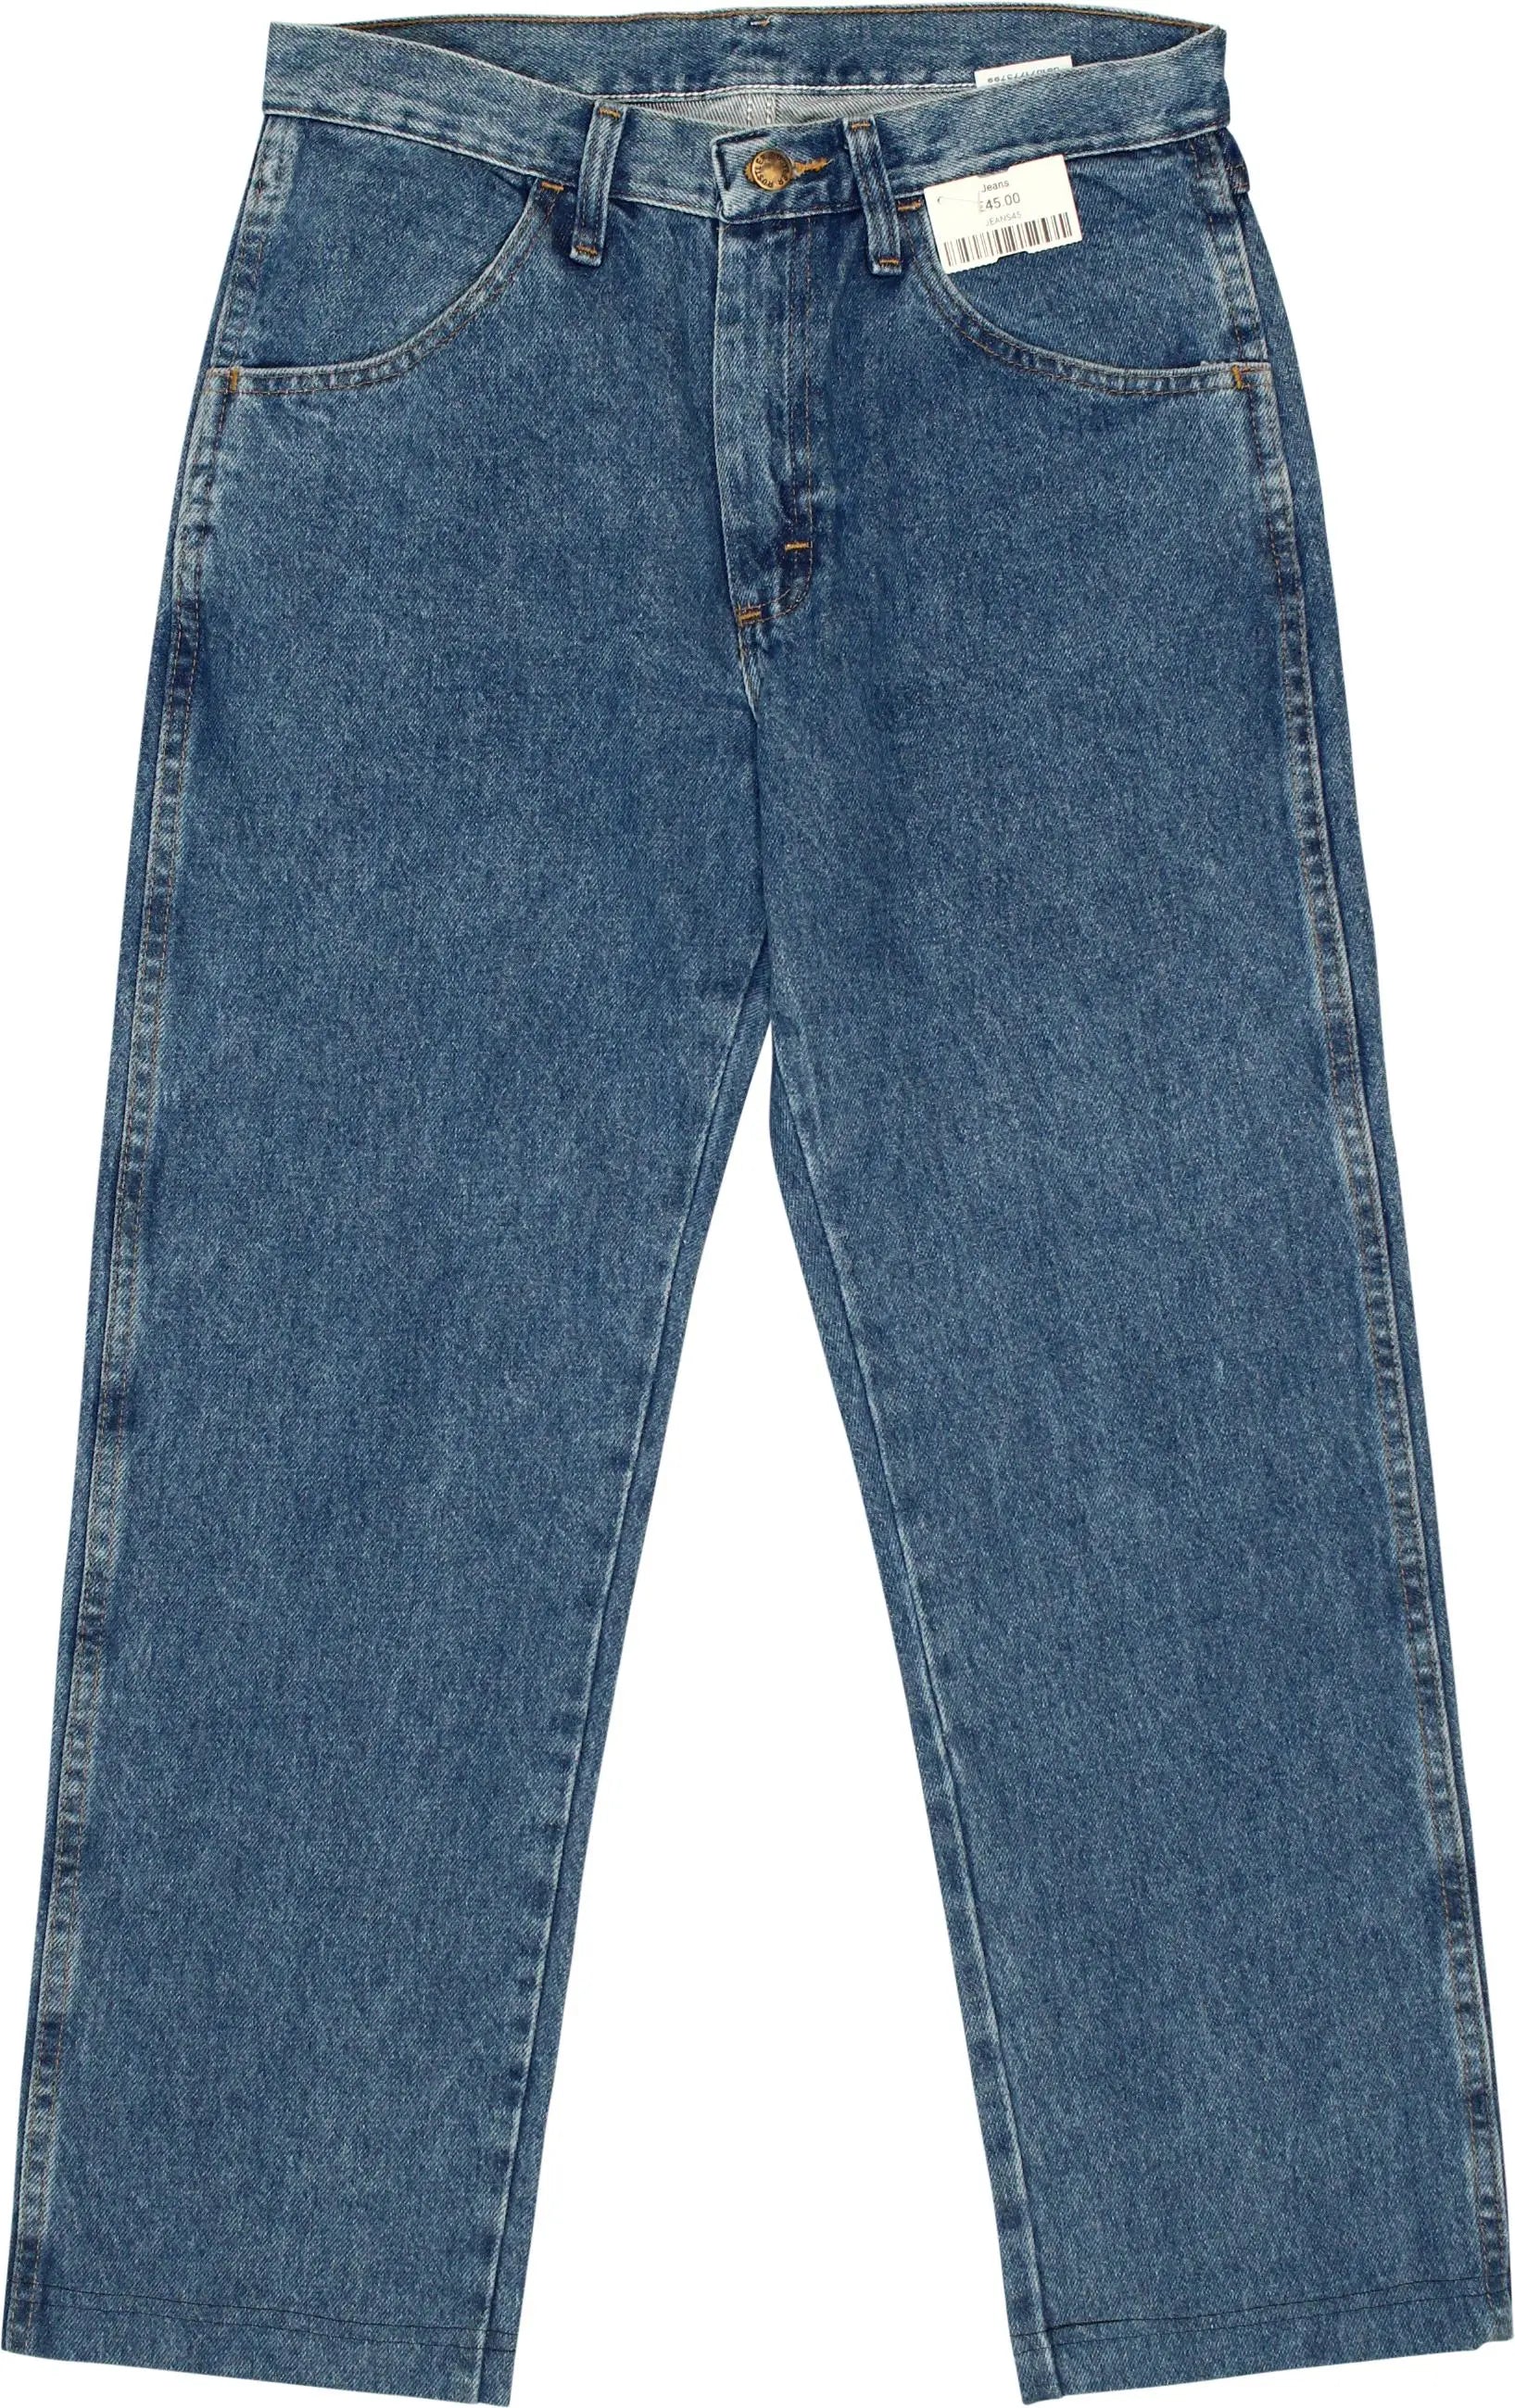 Vintage Regular Fit Jeans for Women